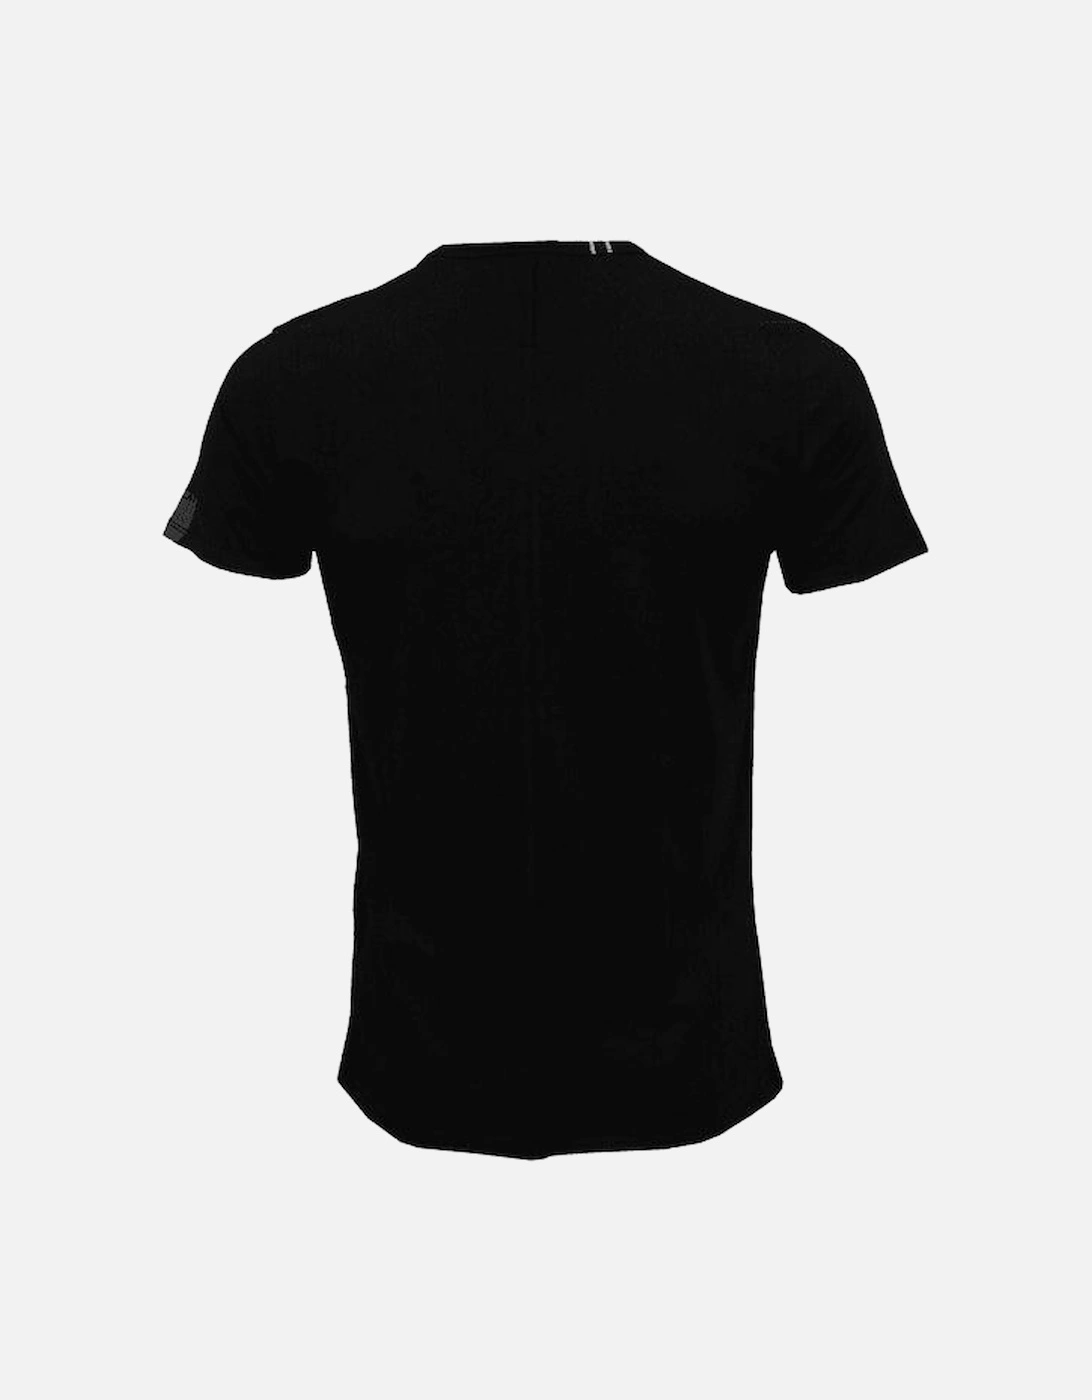 Luxe V-Neck T-Shirt, Black